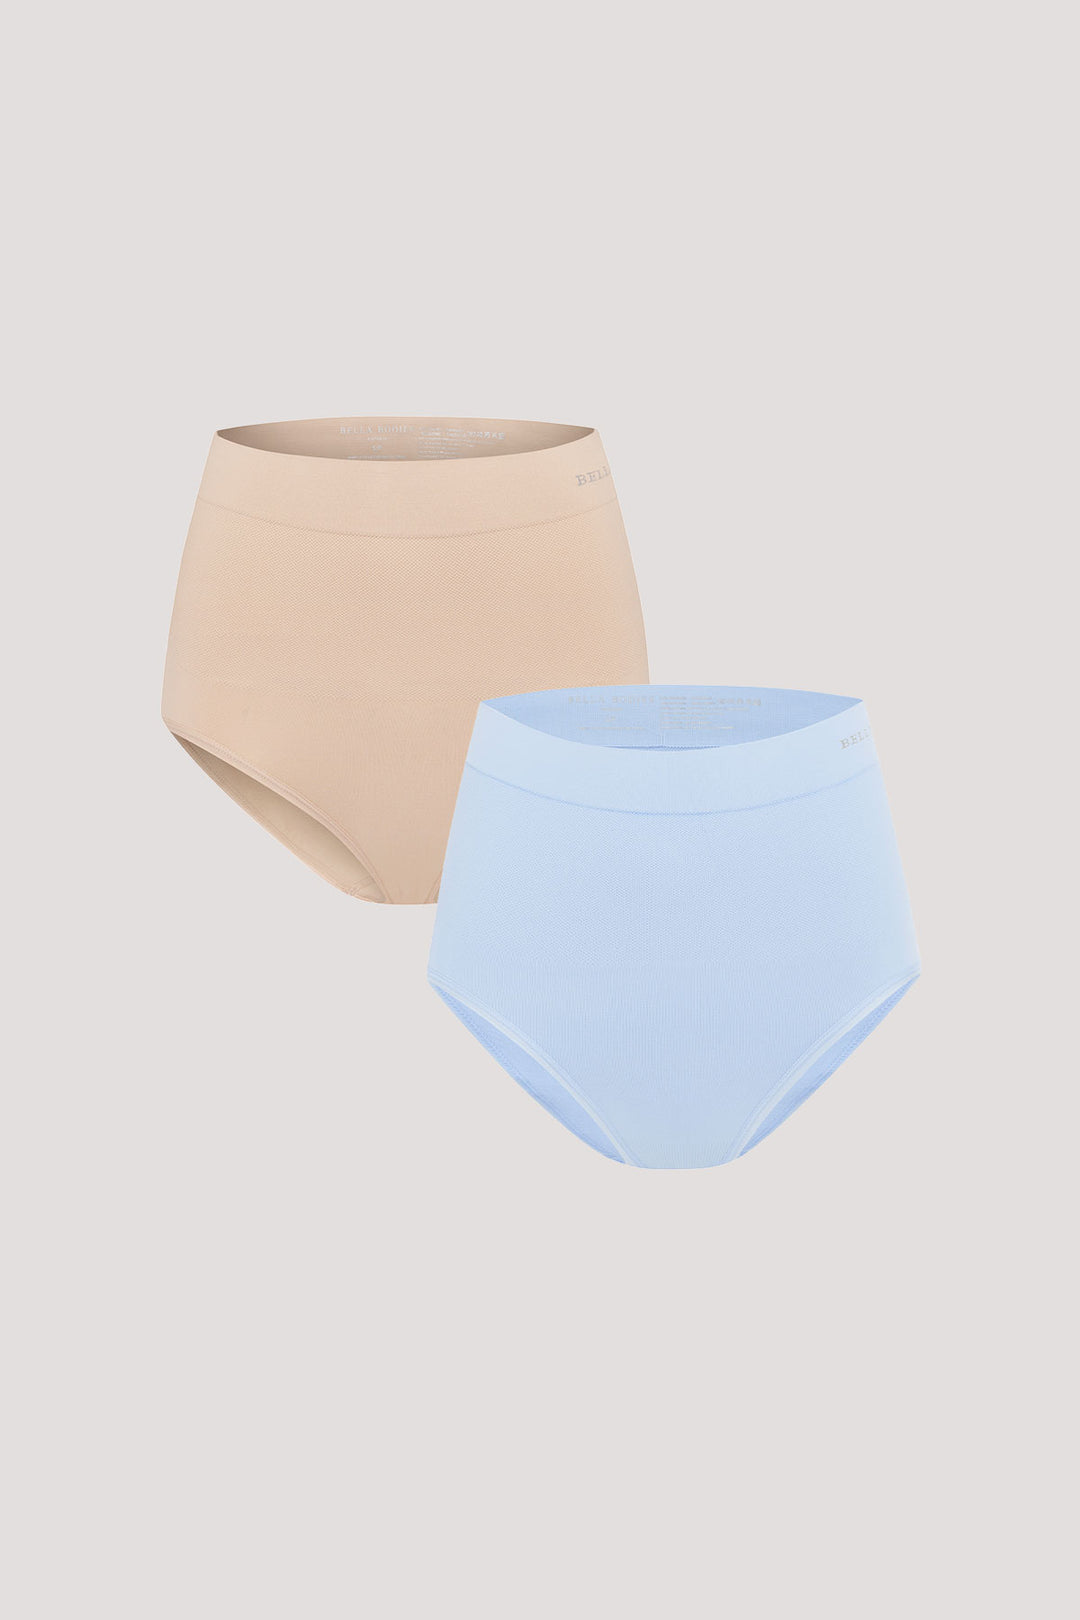 Women's slimming & firming high Waist underwear 2 Pack | Bella Bodies Australia | Sand & Sky Blue